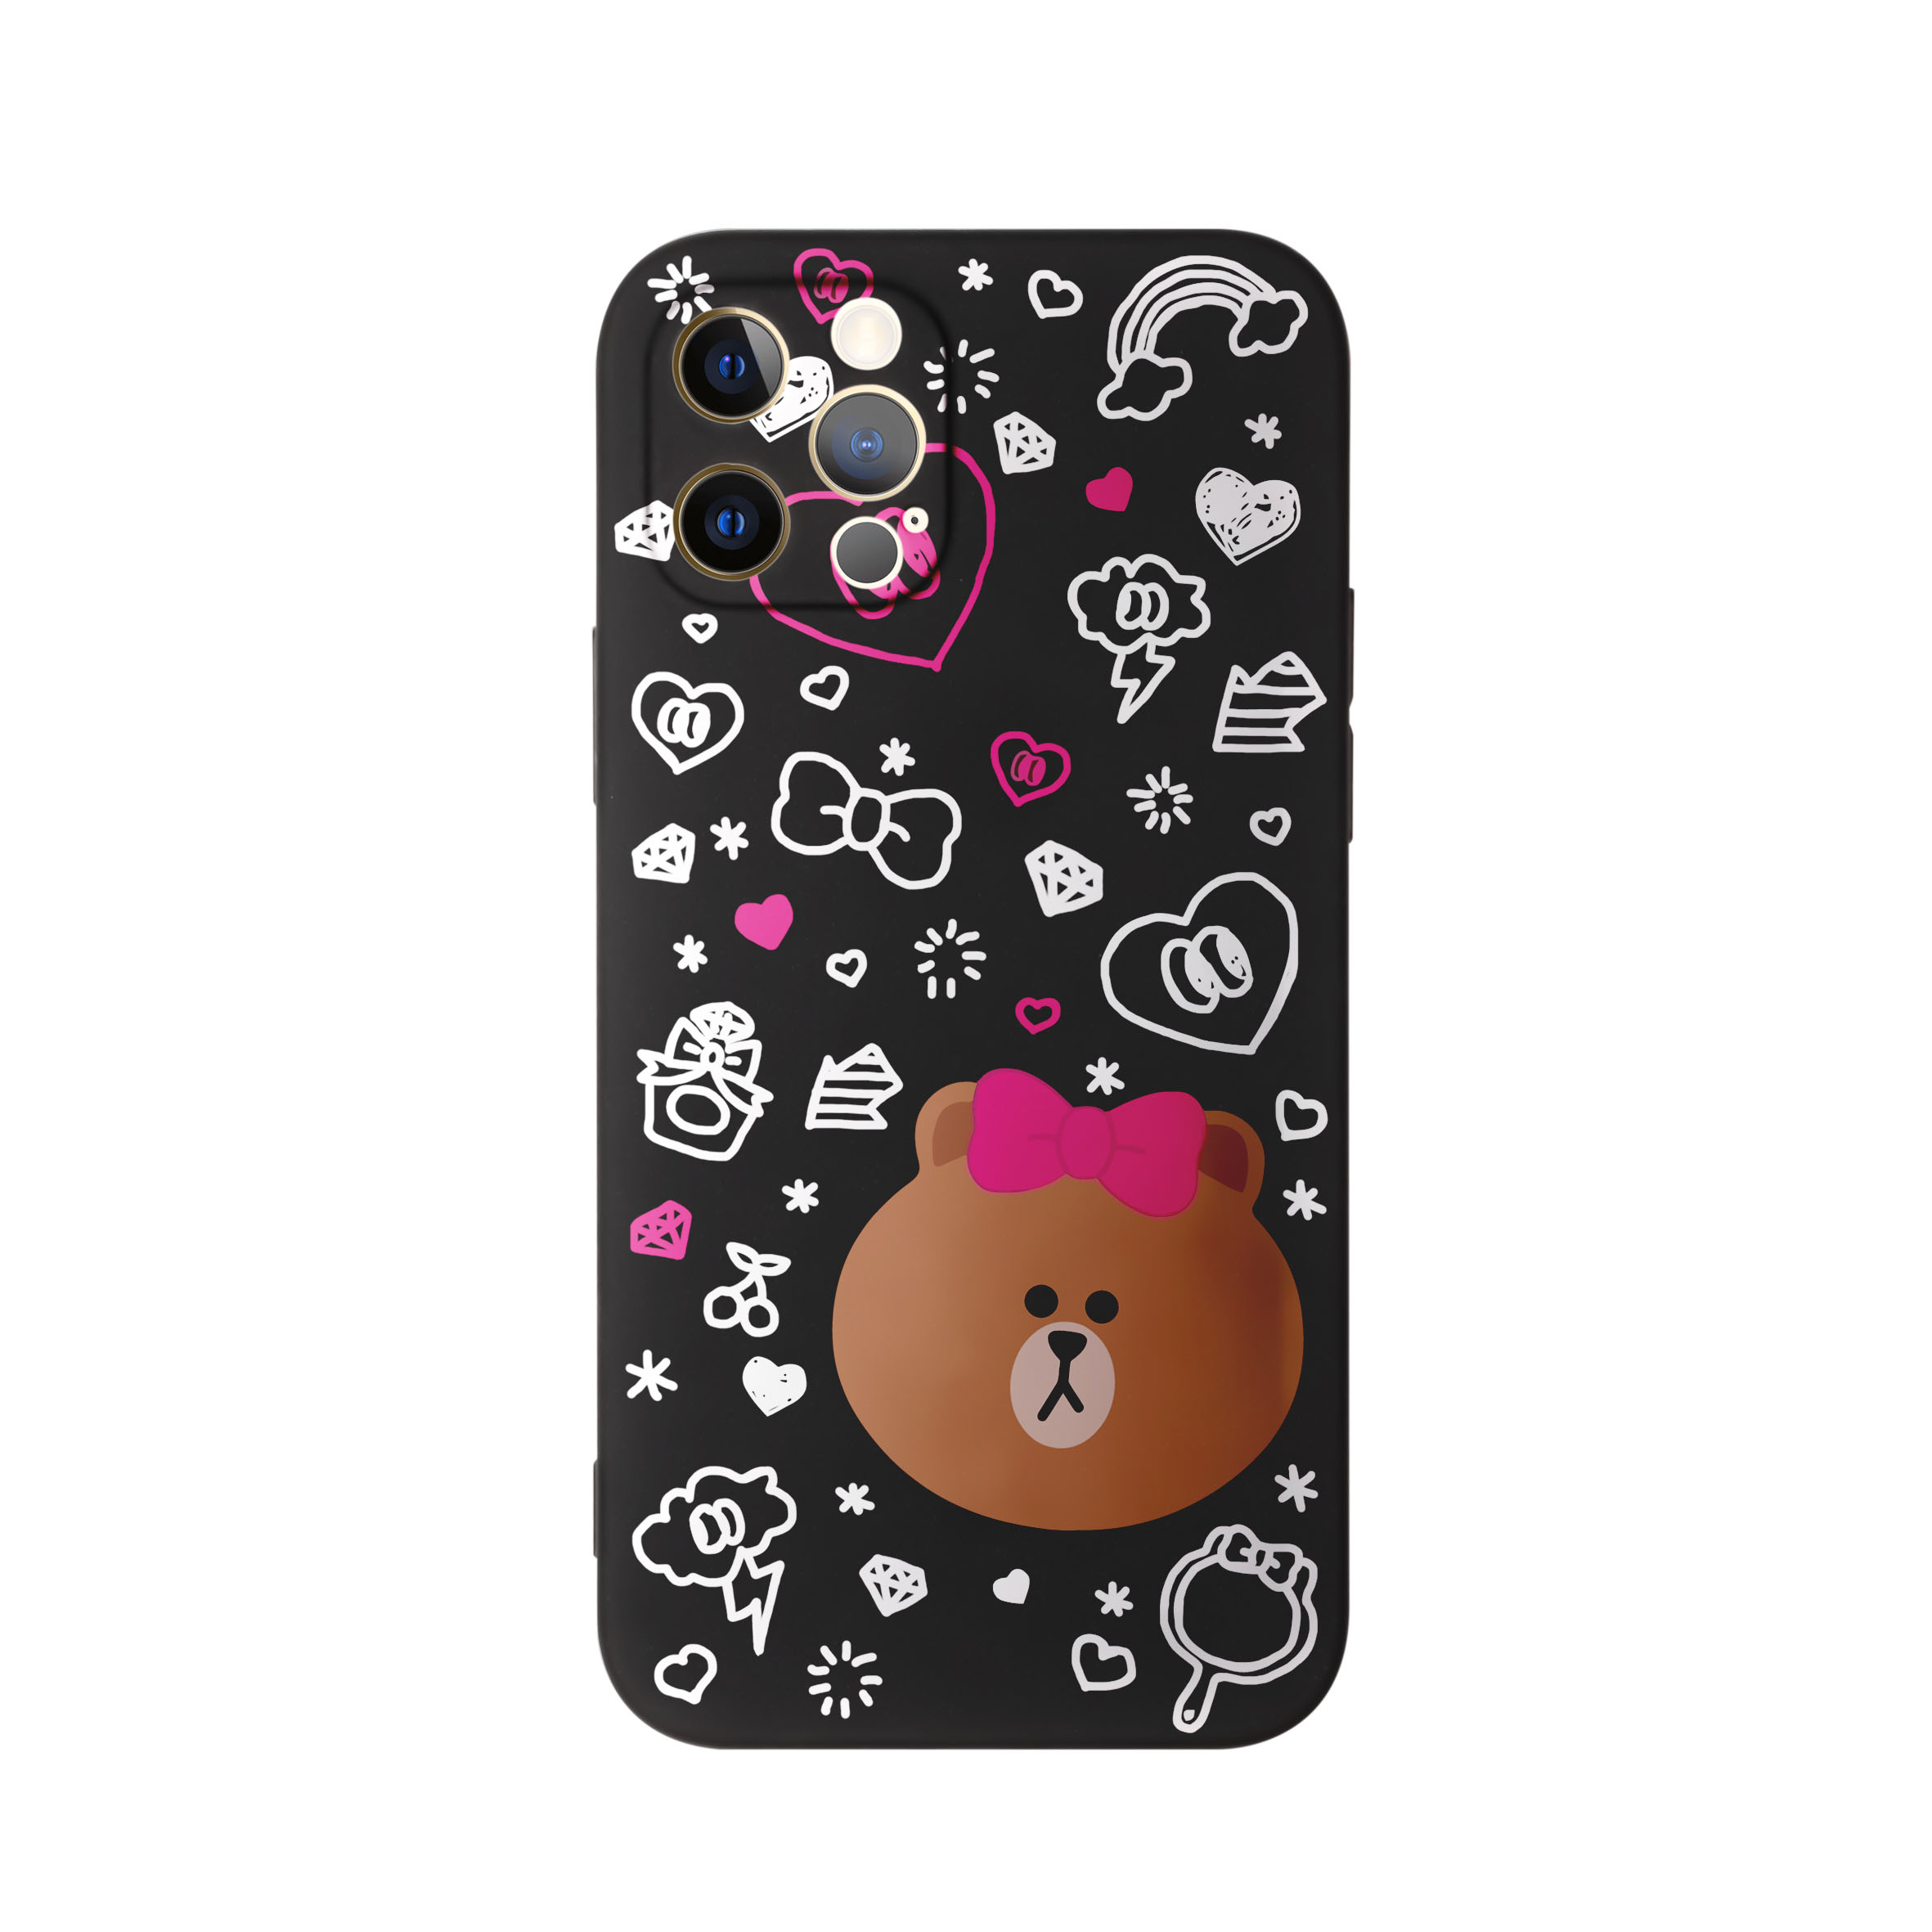 کاور طرح خرس لاین دخترانه کد f4050 مناسب برای گوشی موبایل اپل iphone 11 Pro